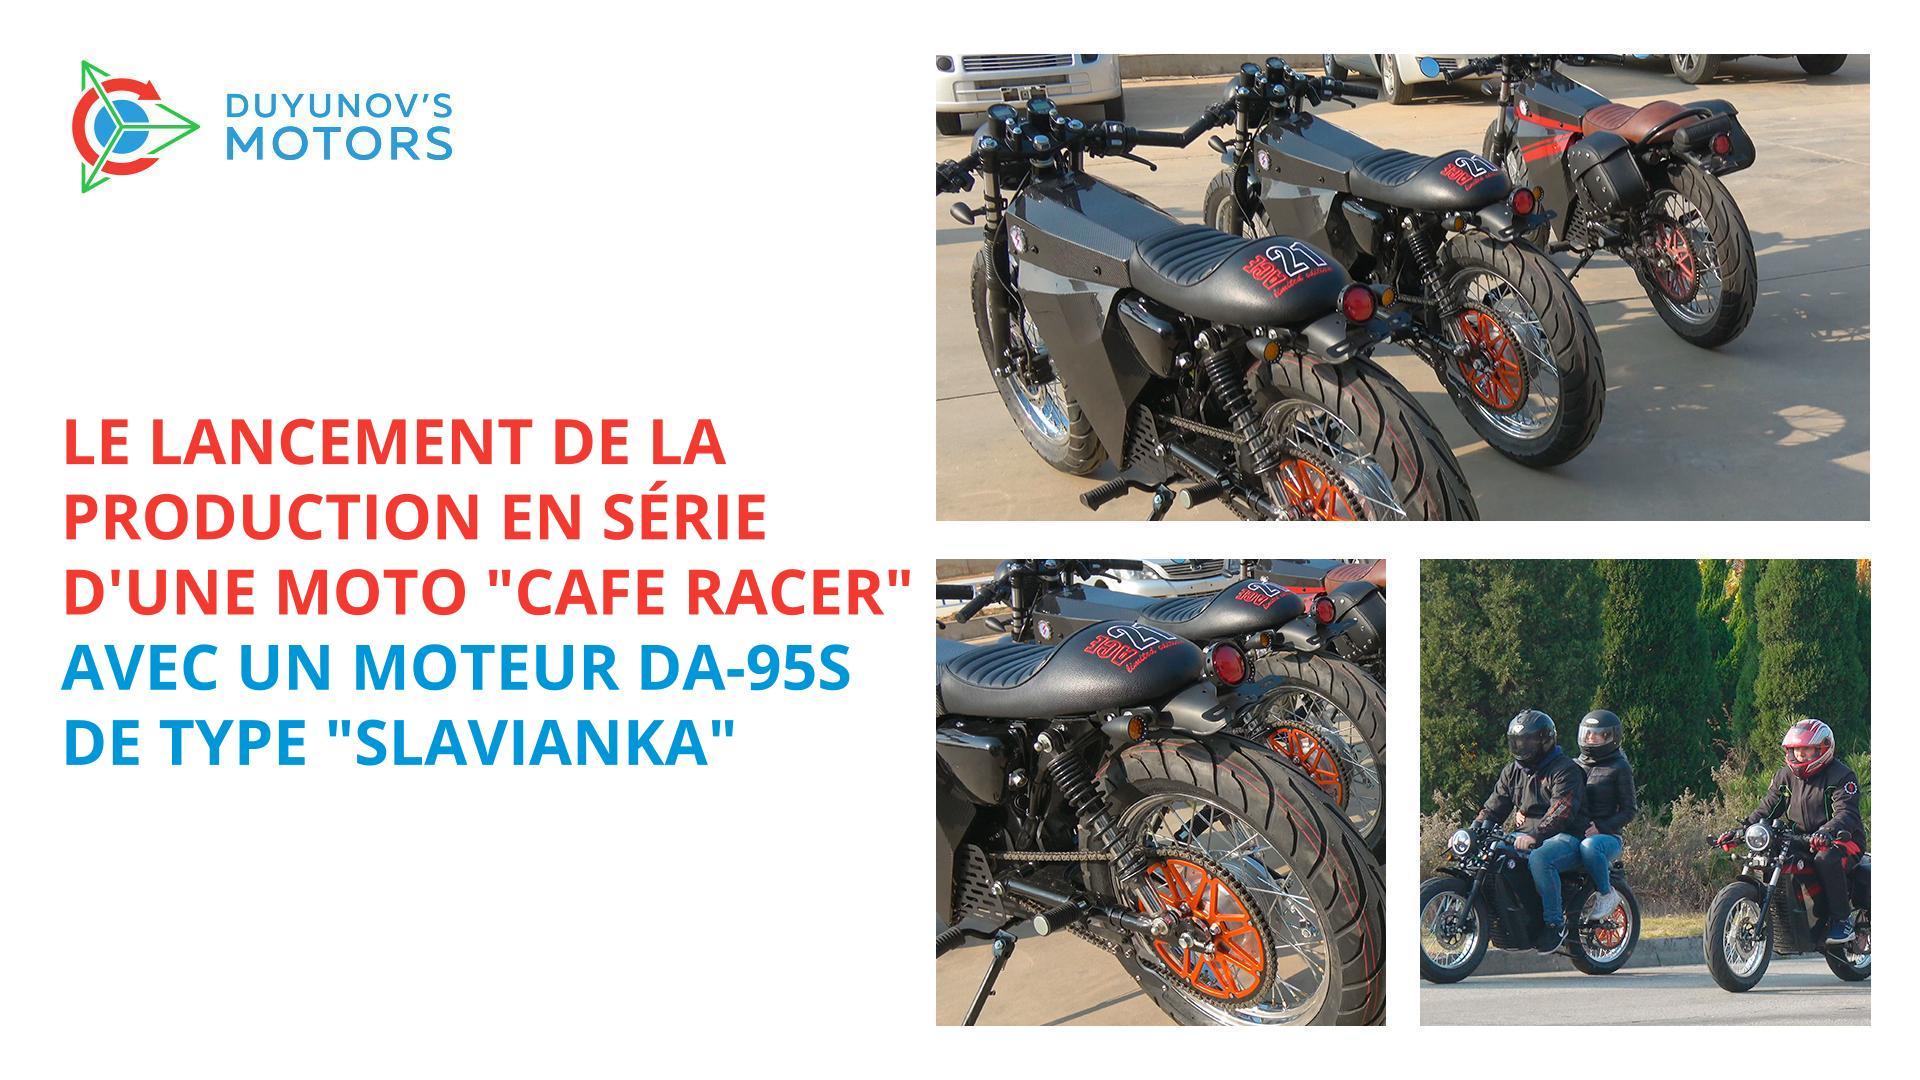 Le lancement de la production en série d'une moto "Cafe racer" avec un moteur DA-95S de type "Slavianka"